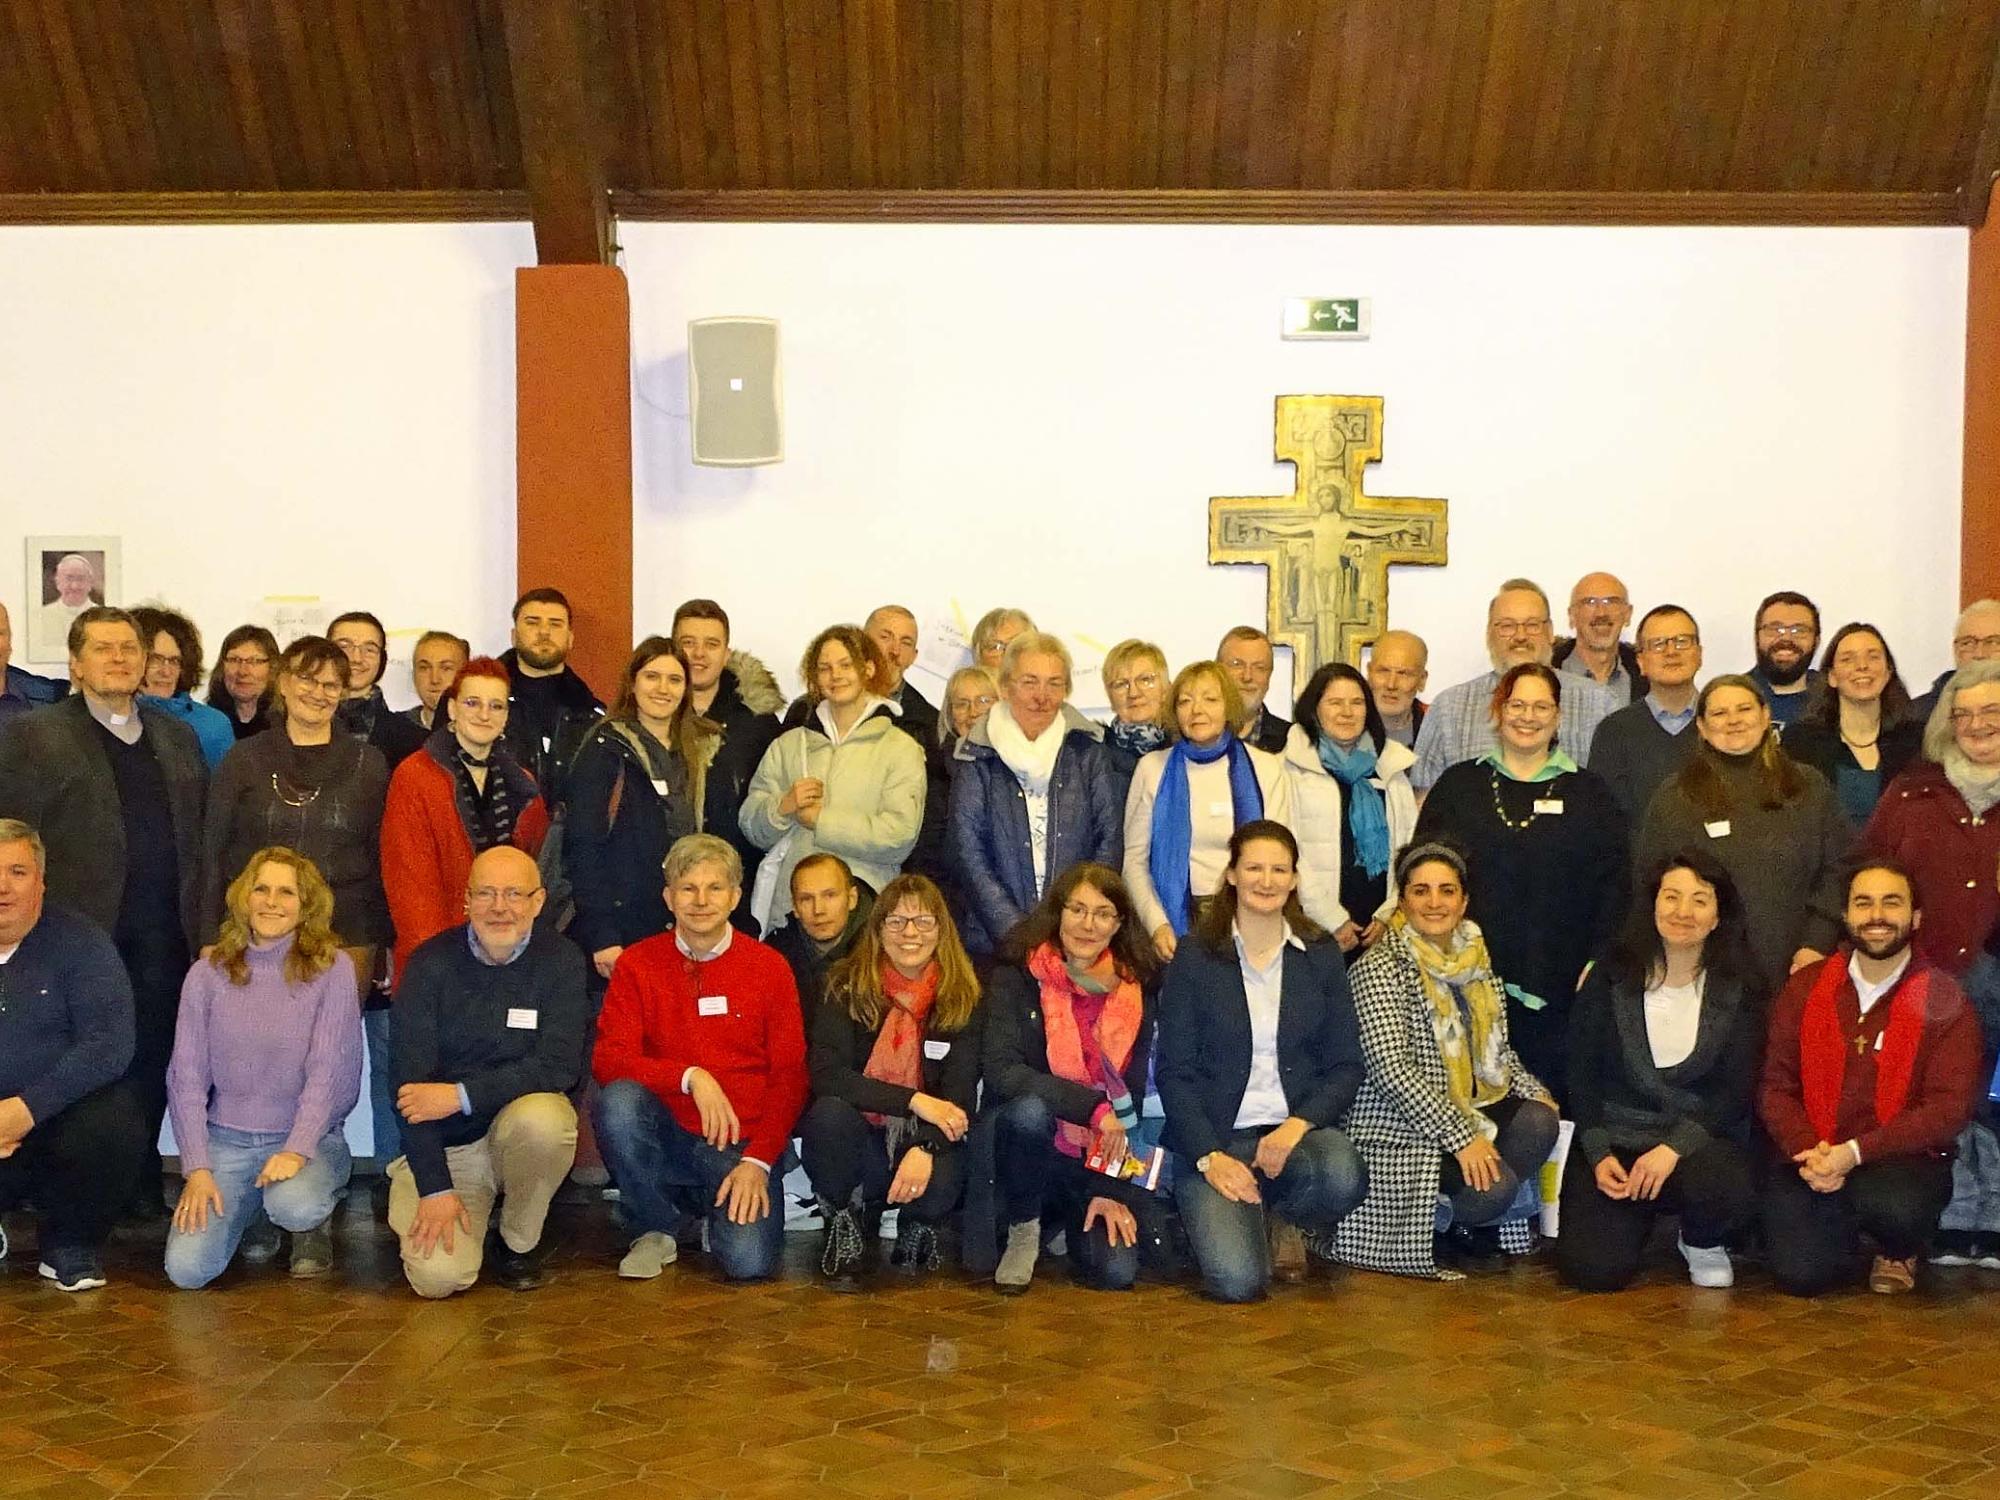 Groß-Gerau, 01. Februar 2023: Die Mitglieder der Pastoralraumkonferenz